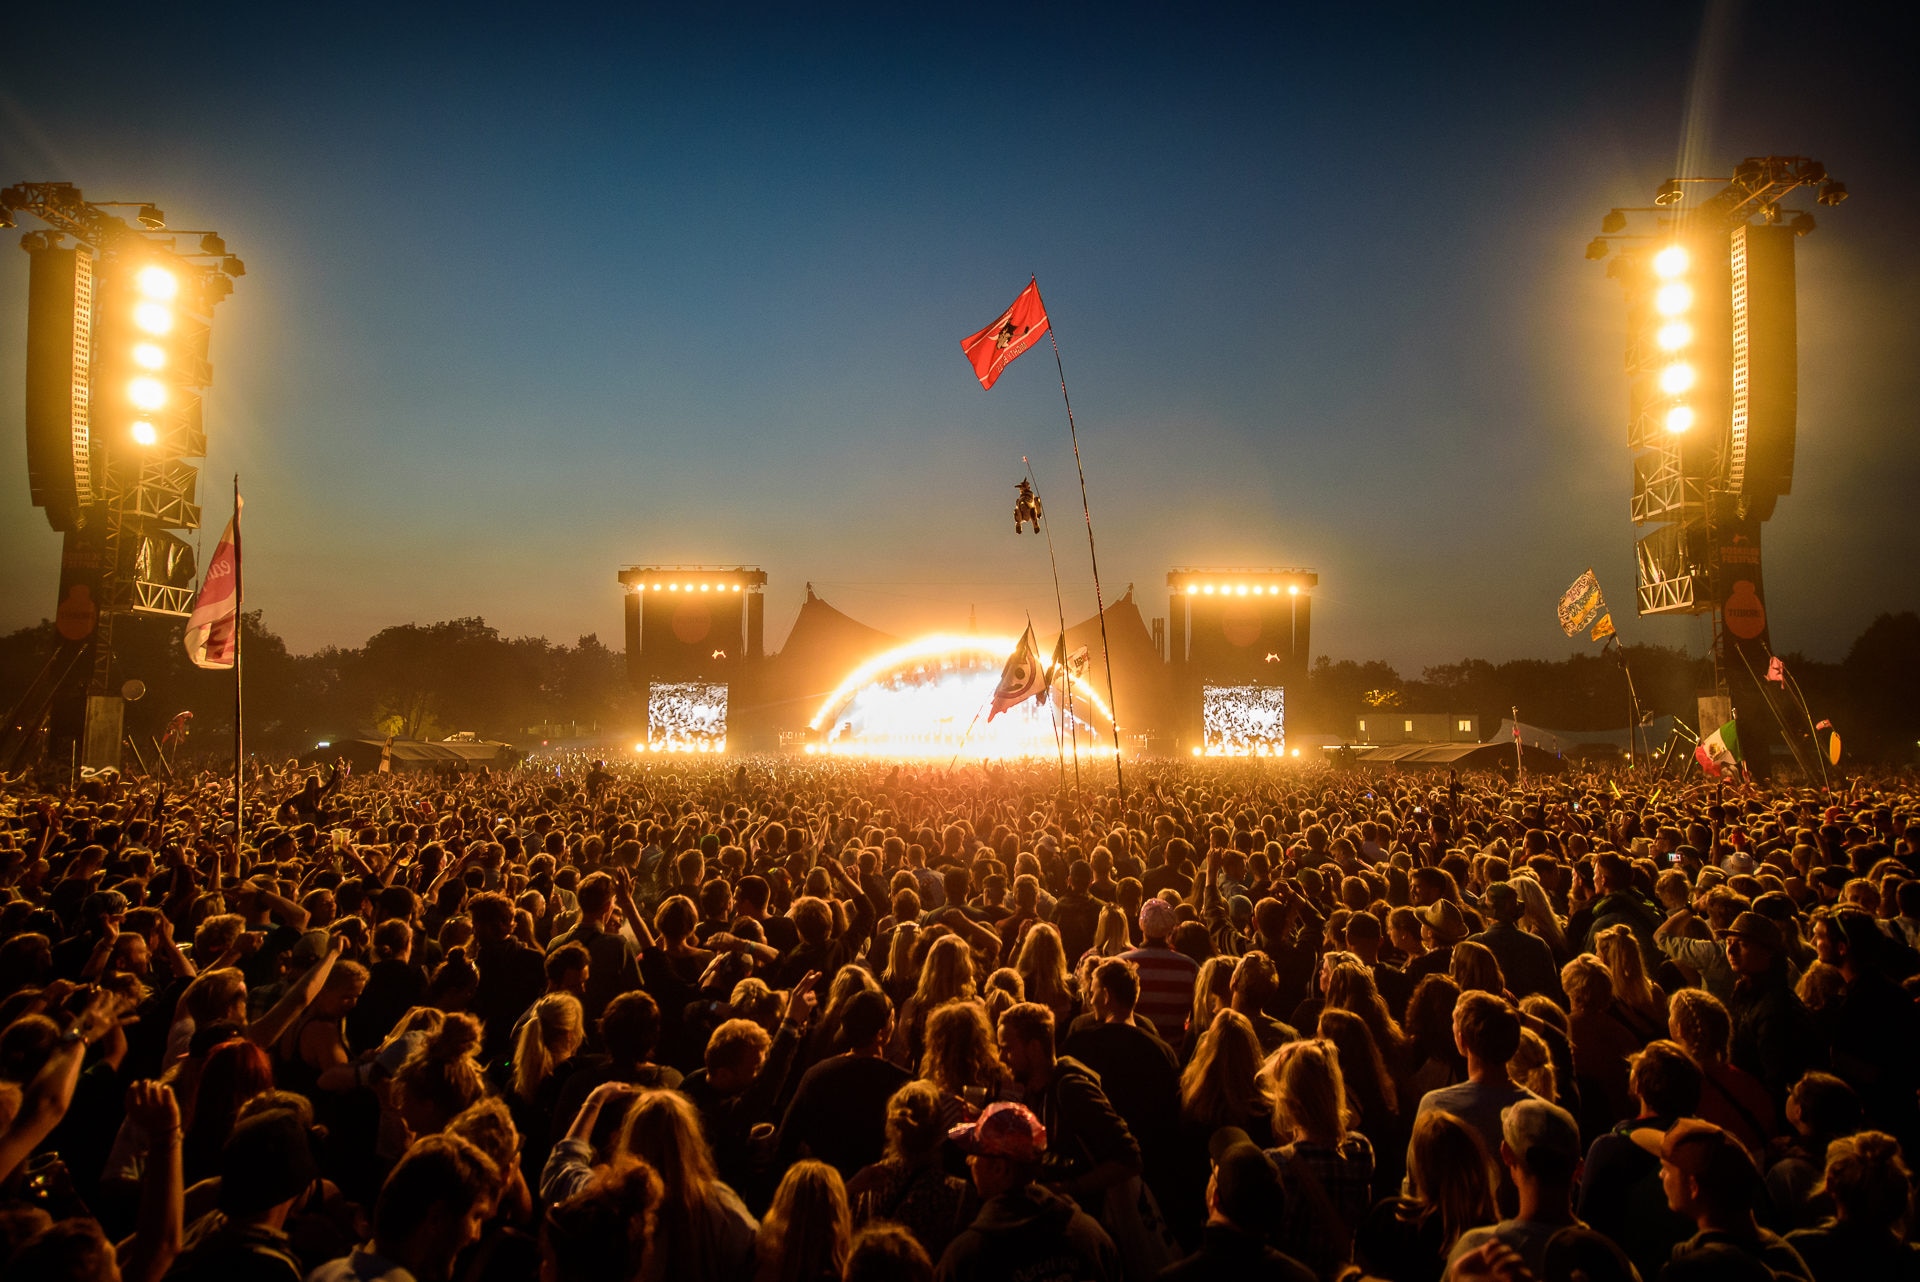 Festival de música Roskilde